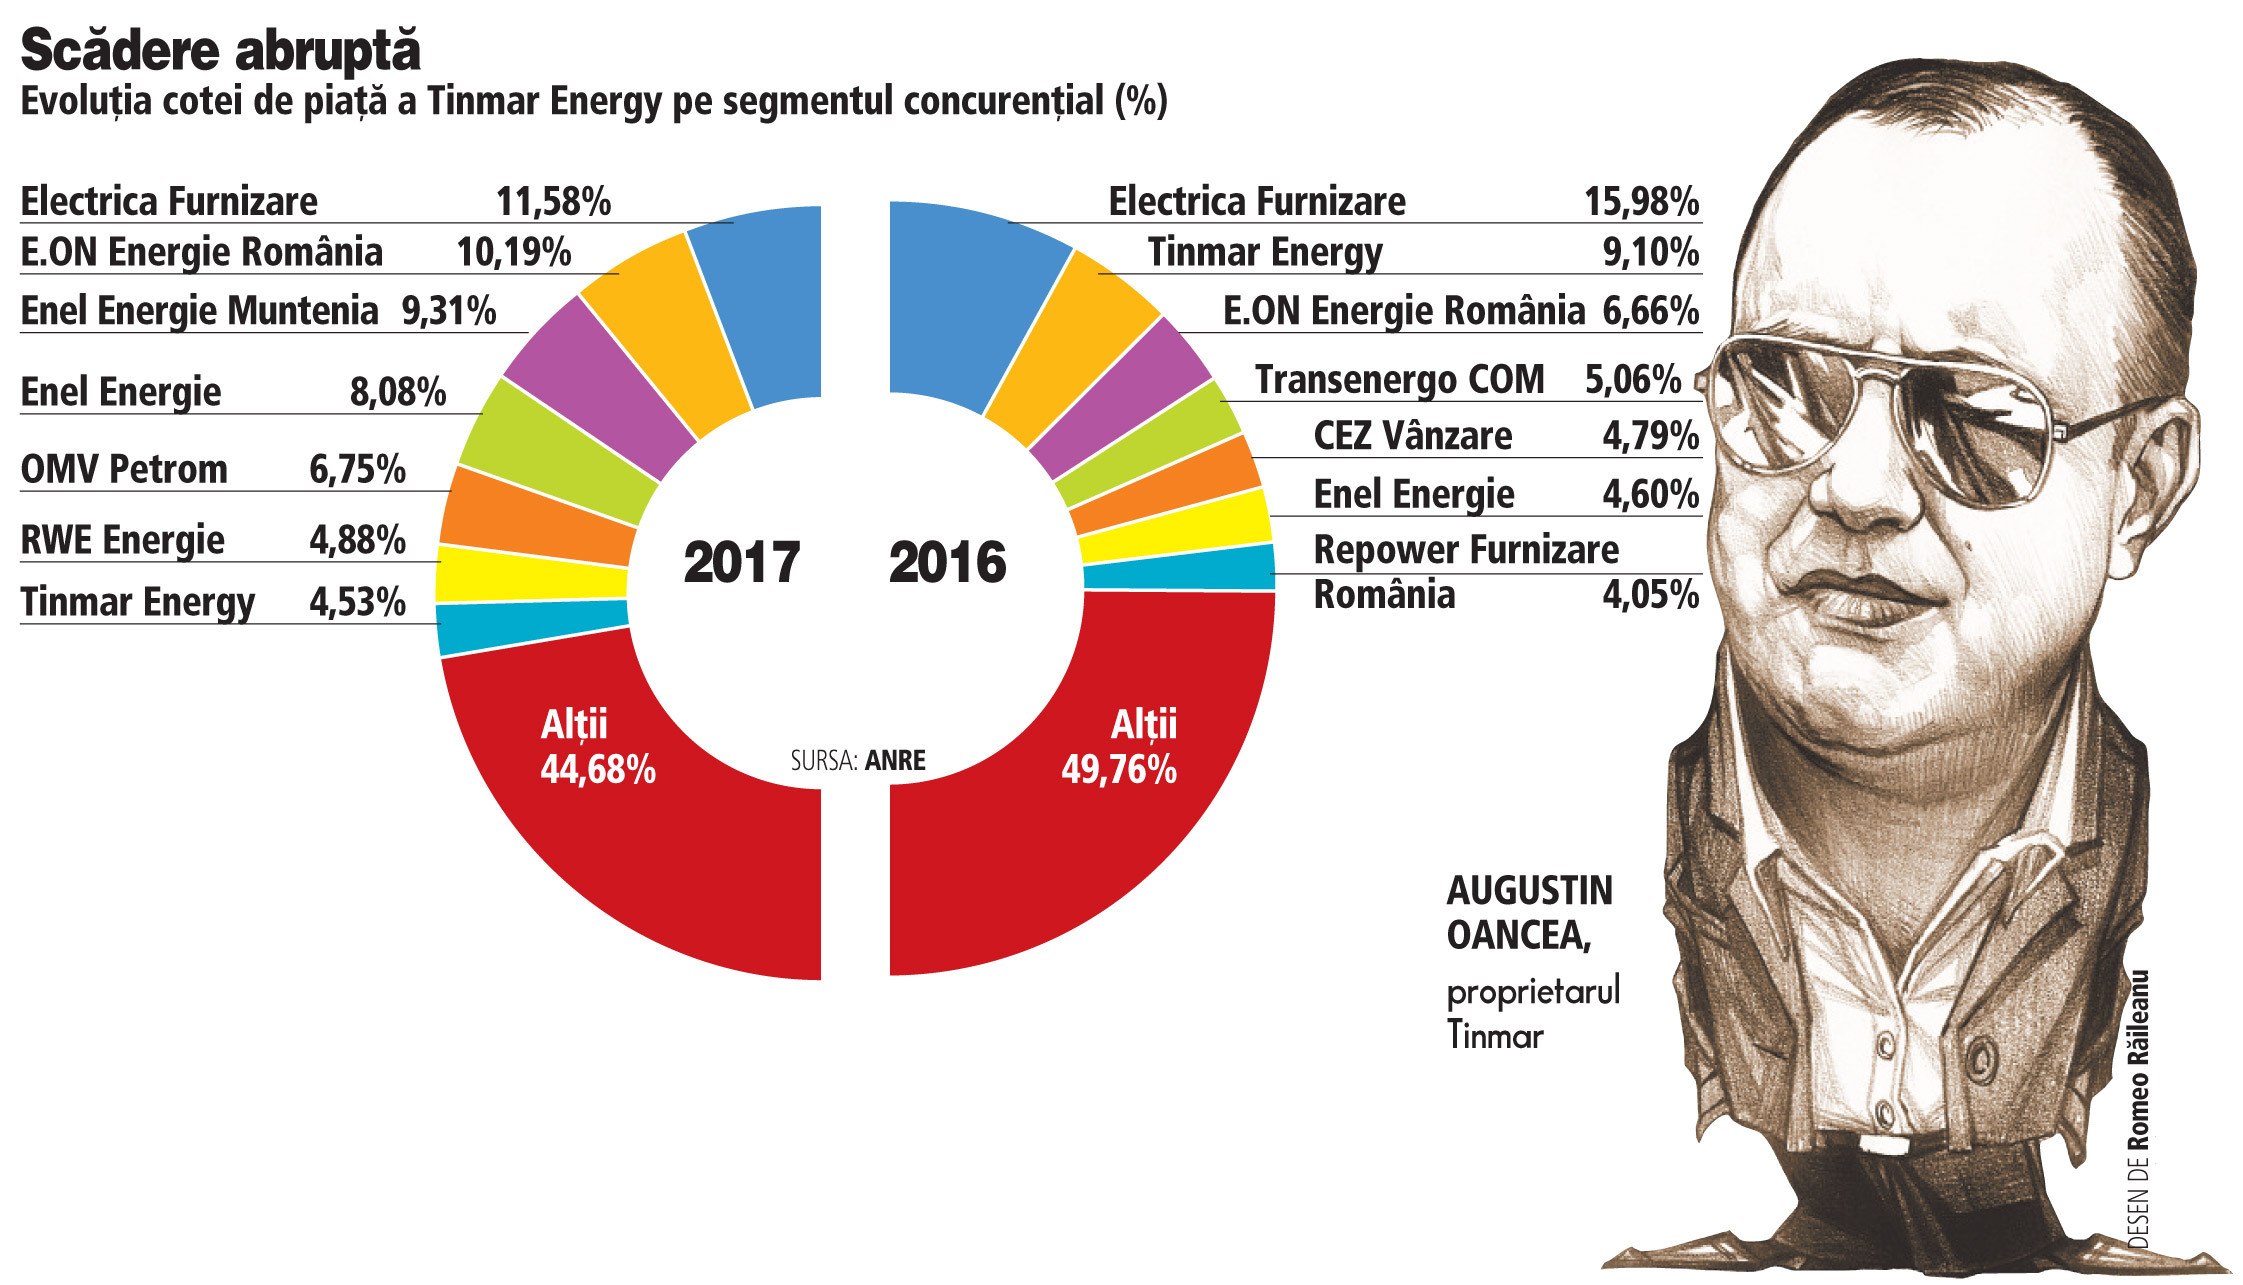 Viaţă grea pentru Augustin Oancea: Tinmar Energy trece în liga secundă a furnizorilor de energie după o scădere substanţială a cotei de piaţă în 2017 de la 9% la 3%